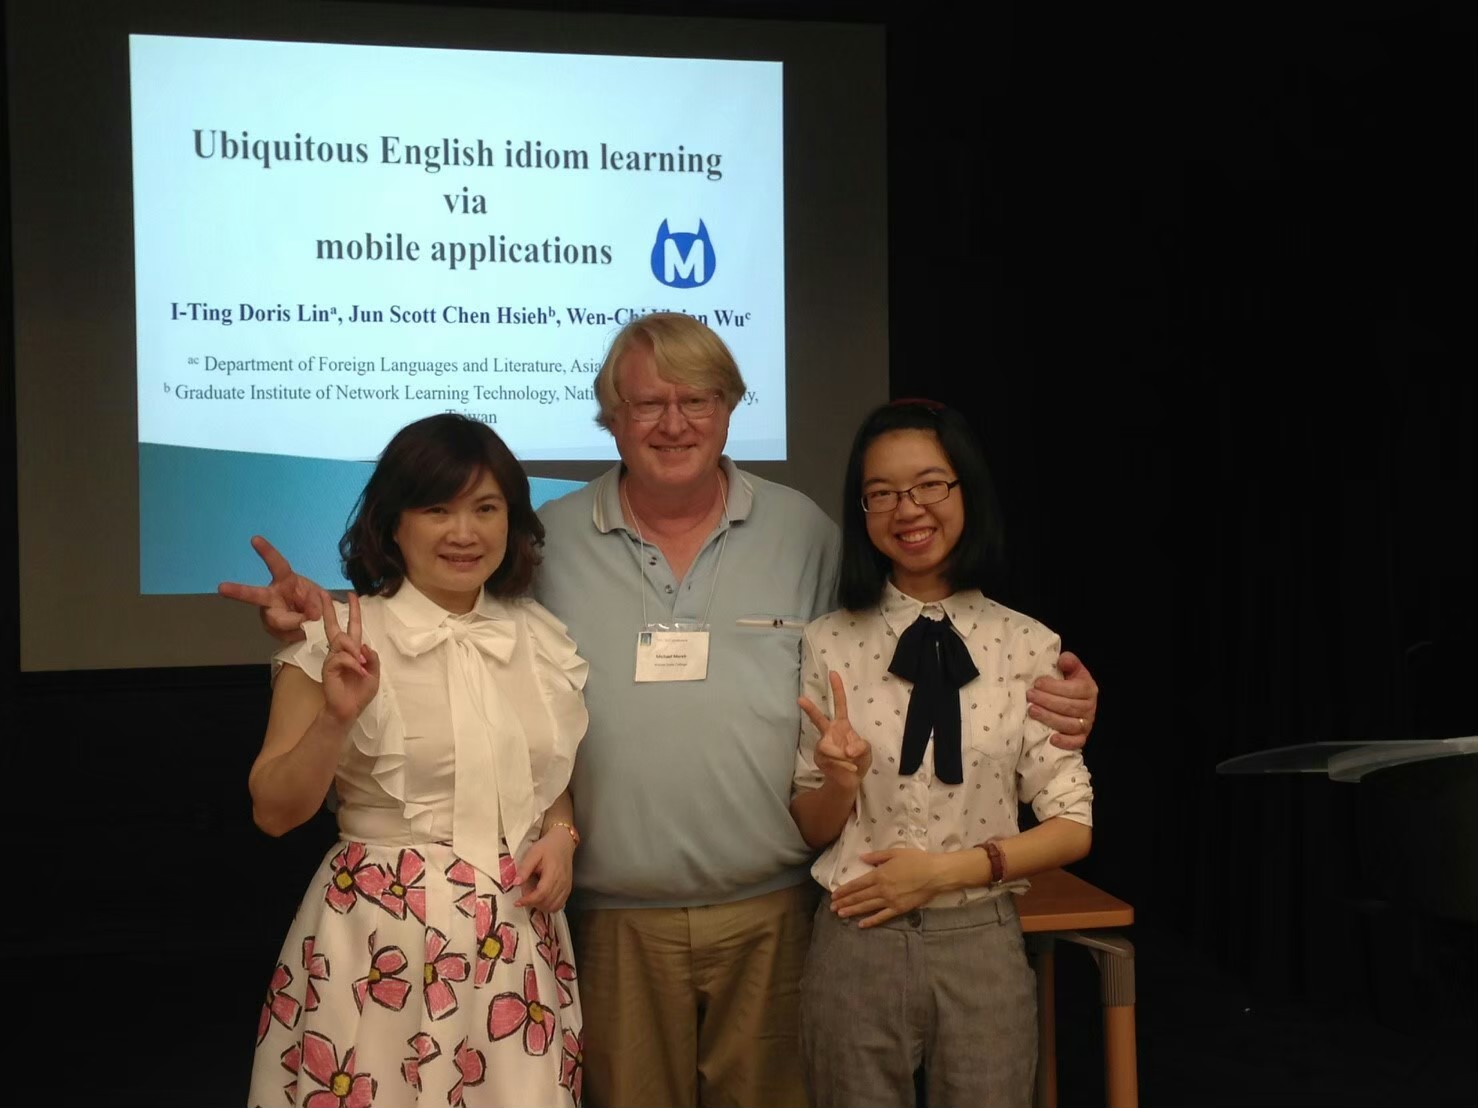 外文系碩士班校友林怡婷(右)，論文指導教授吳文琪(左) 與Michael W. Marek教授，2018年在美國柏克萊大學合影